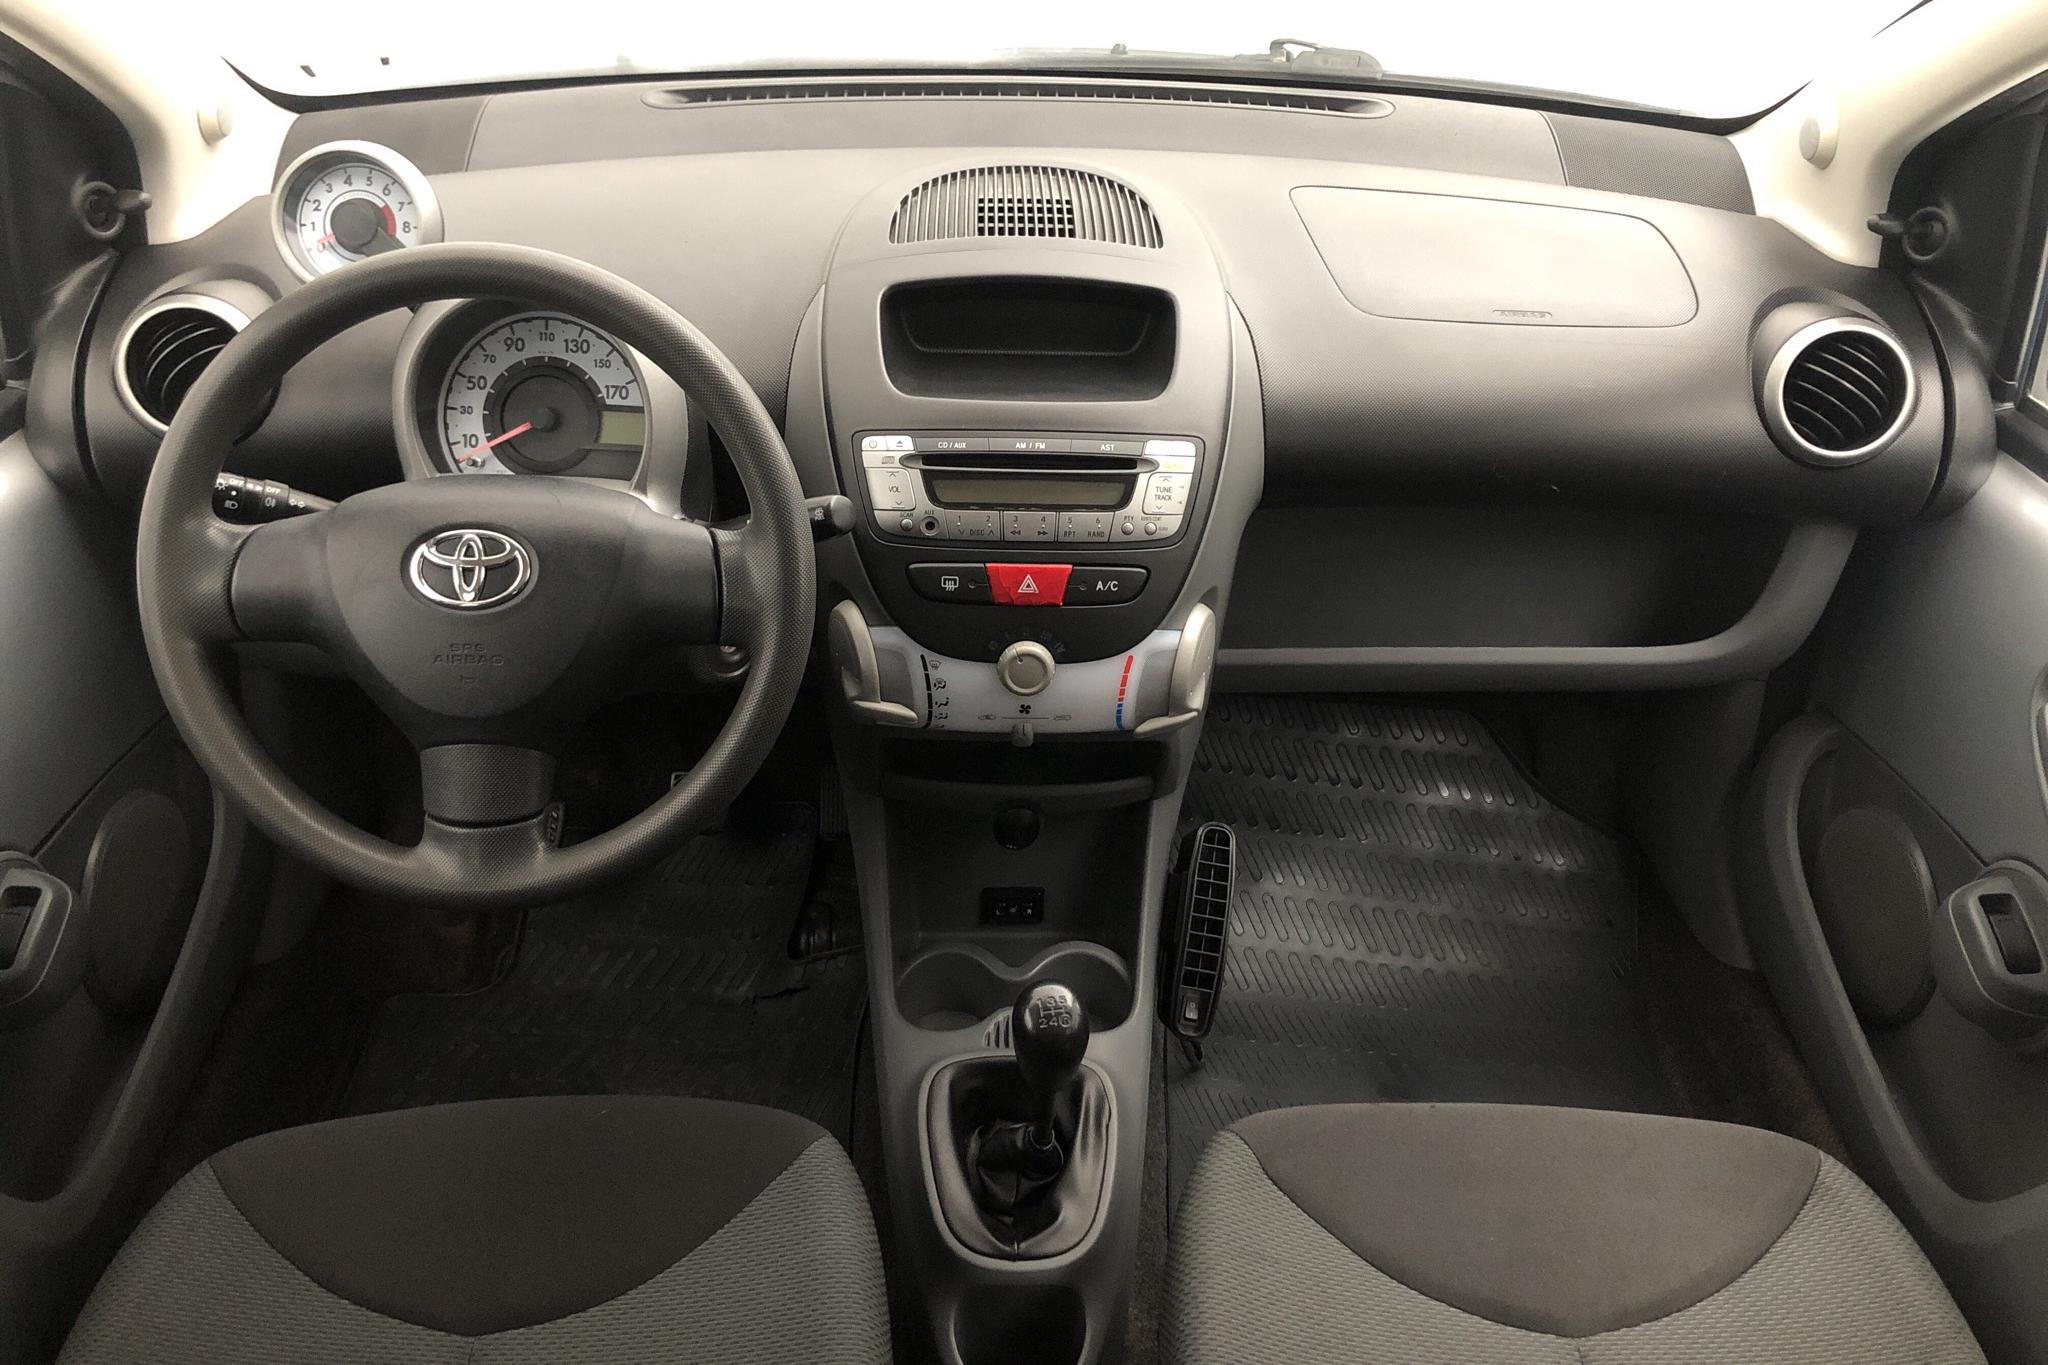 Toyota Aygo 1.0 VVT-i 5dr (68hk) - 116 560 km - Manual - silver - 2008